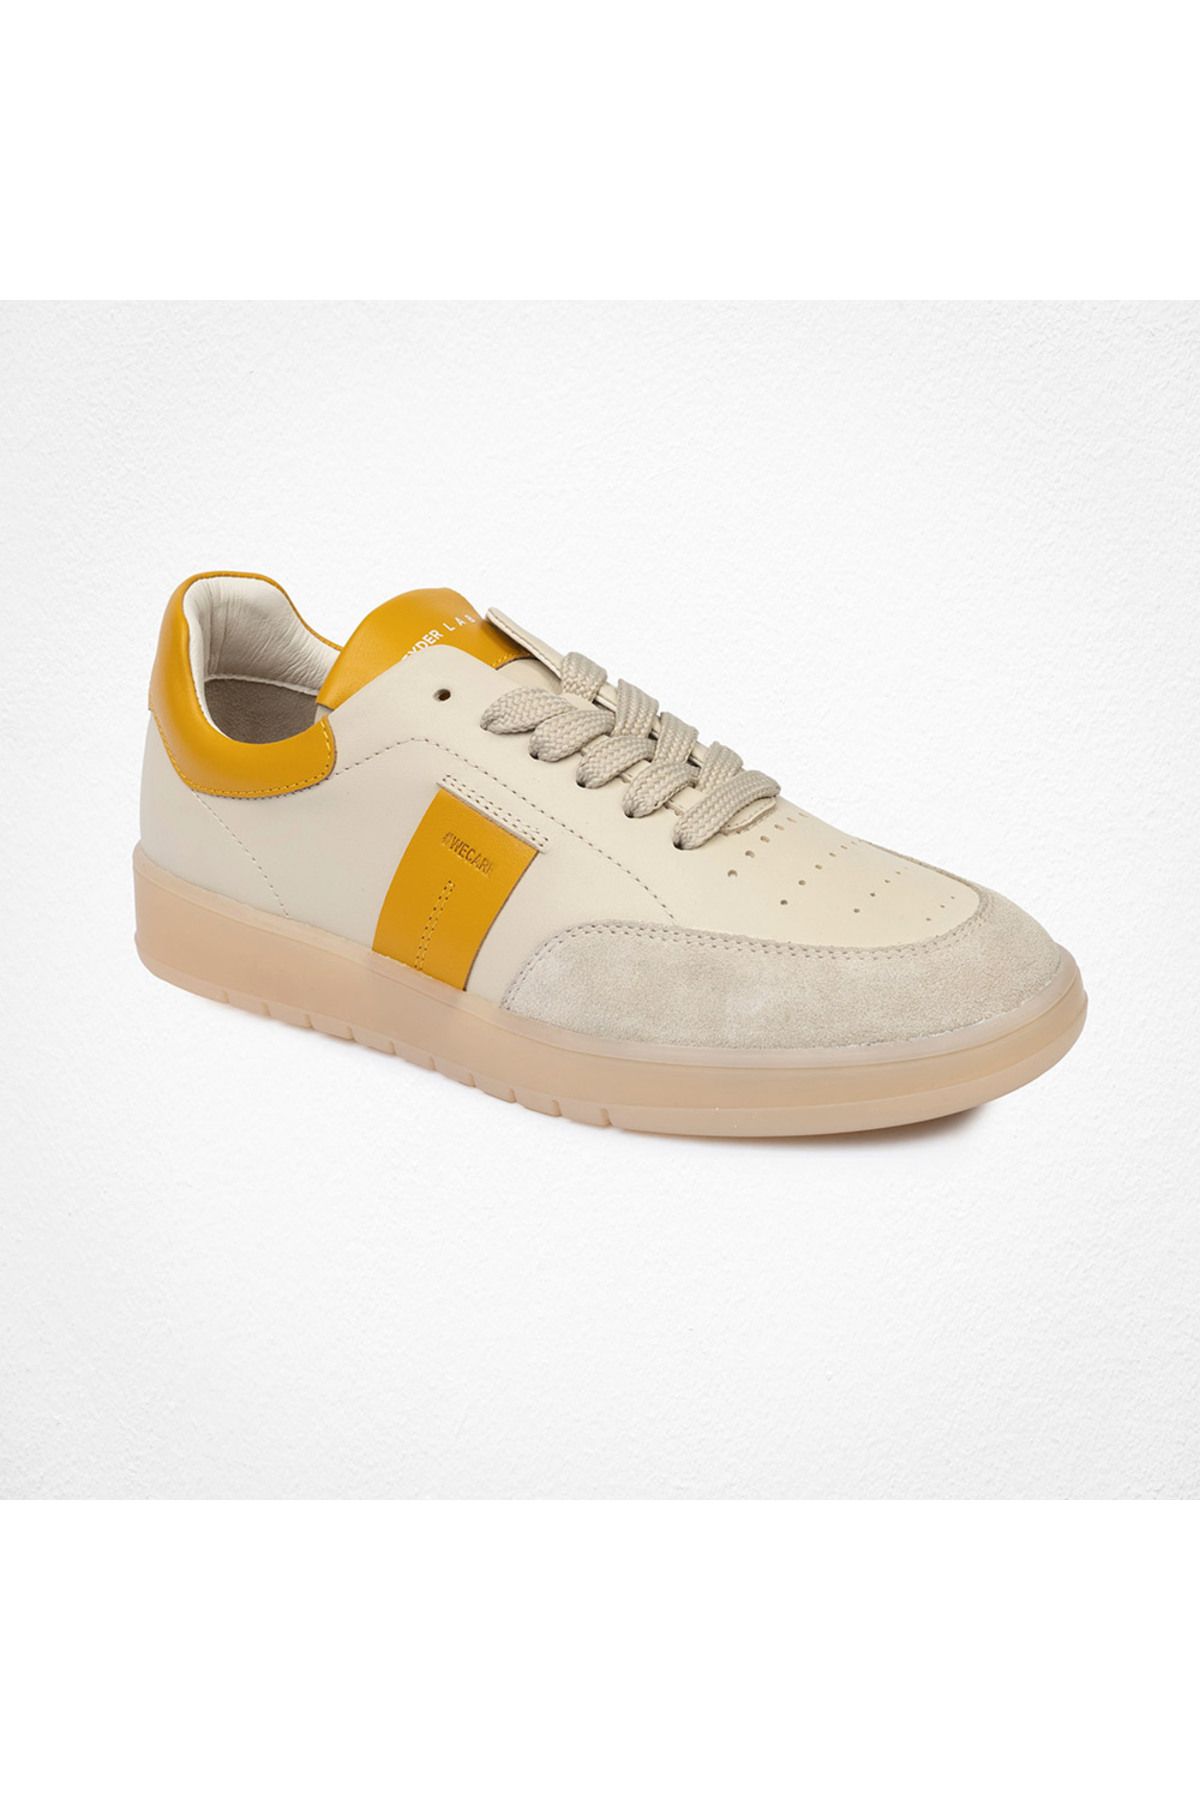 Greyder Lab Kadın Sarı Hakiki Deri Sneaker Ayakkabı 4y2sa45160